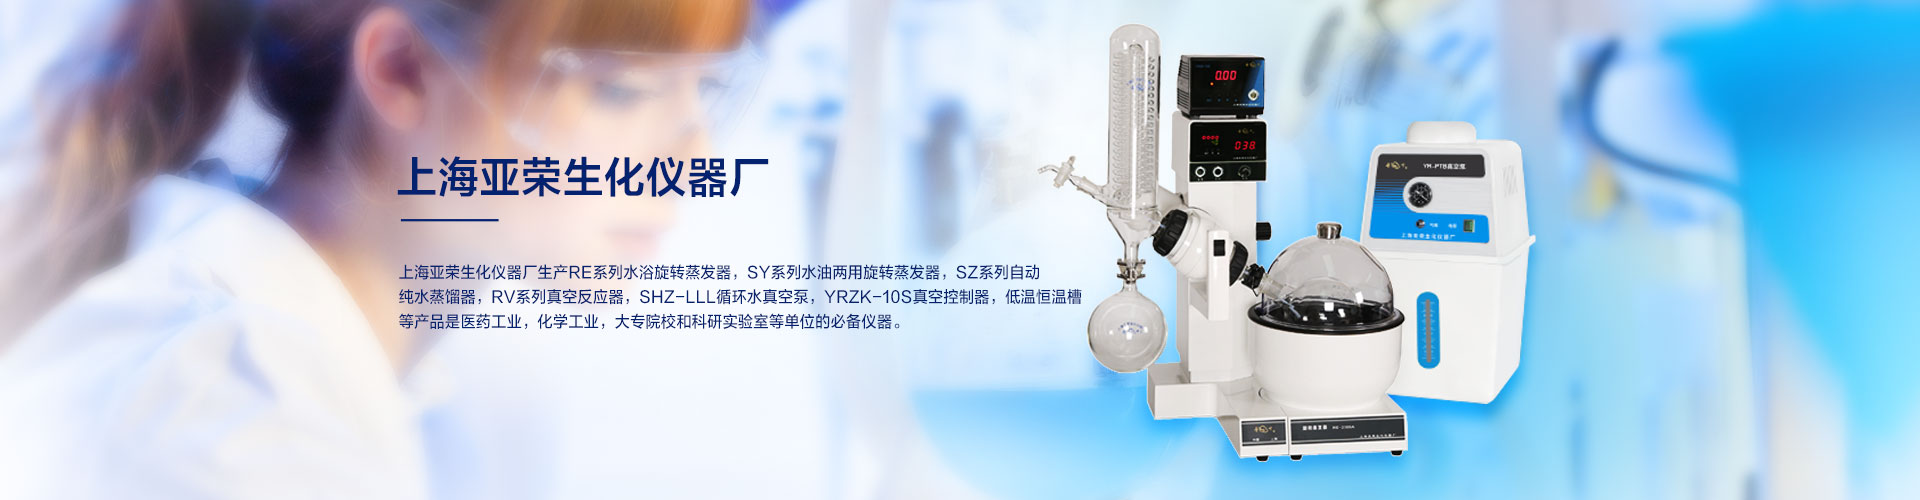 上海亚荣生化仪器厂拥有“金叶”注册商标，是国内较早研发生产销售旋转蒸发器的企业